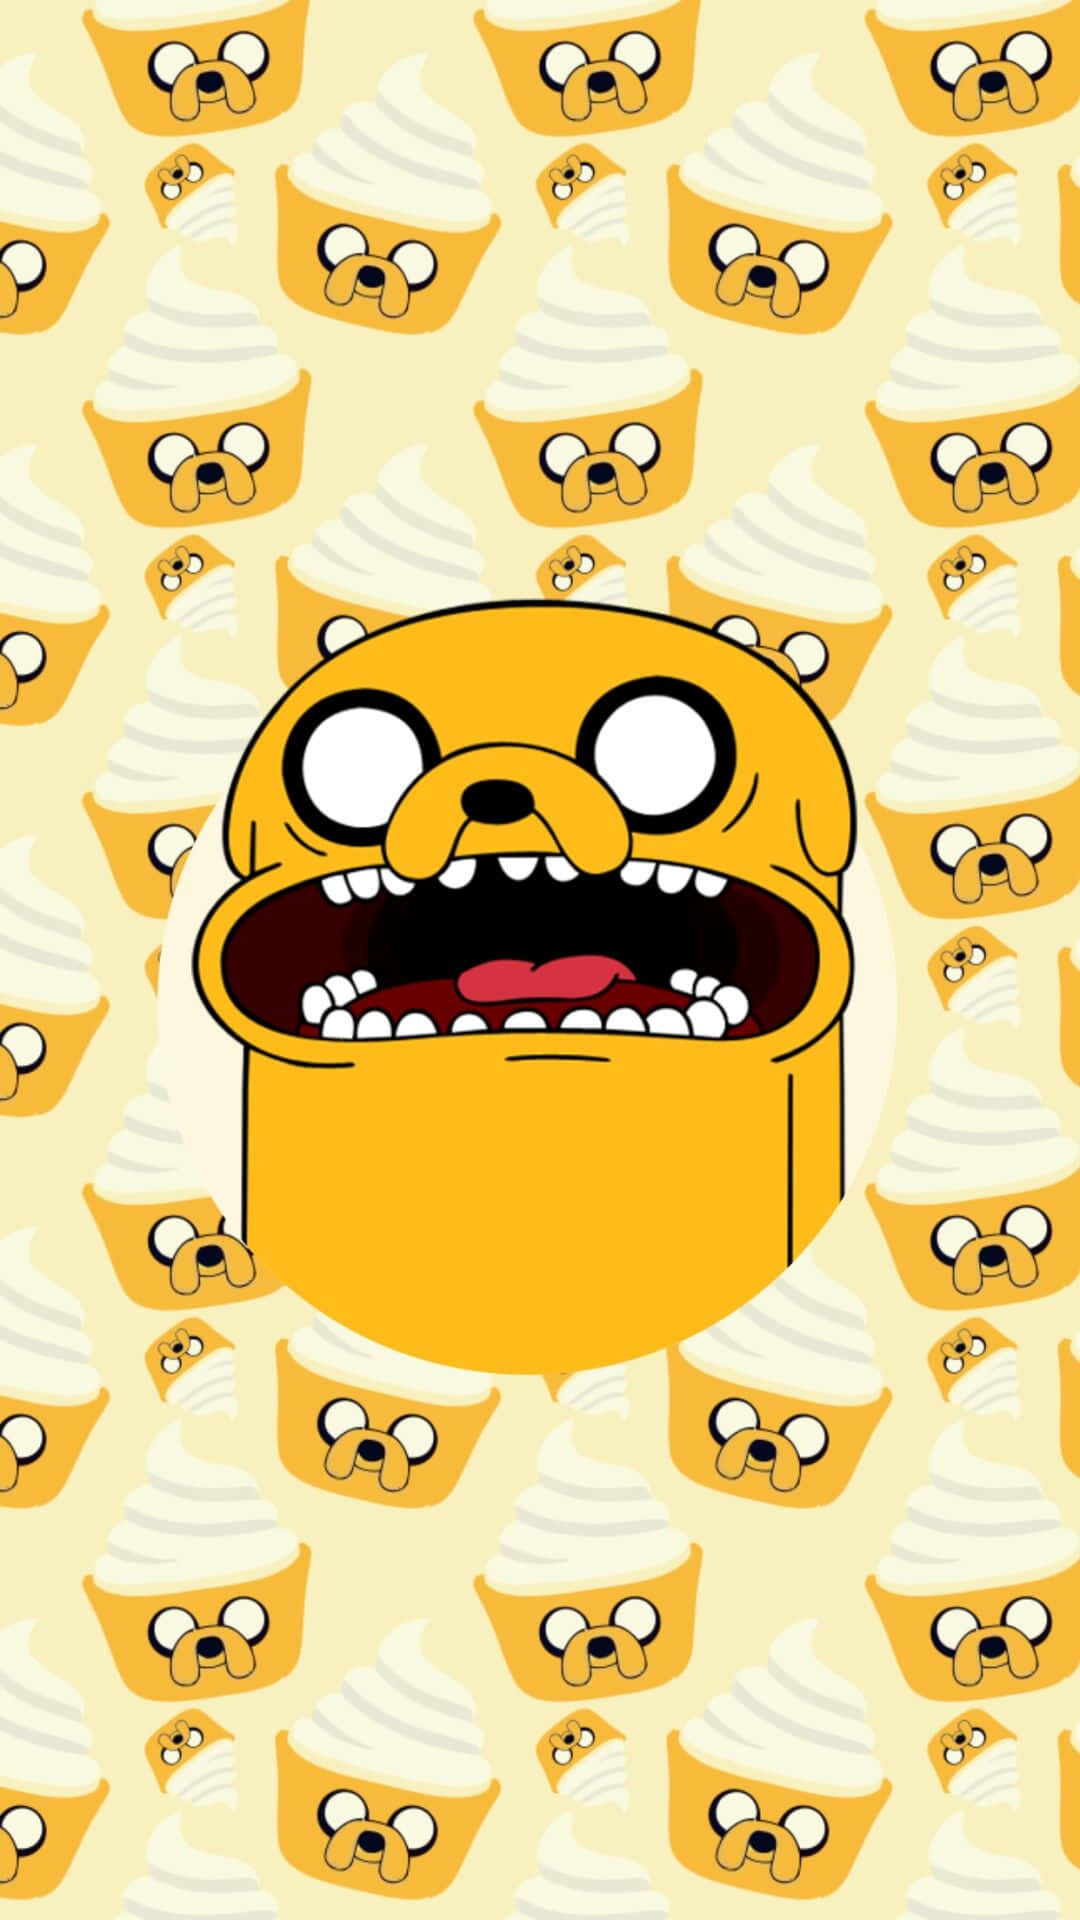 Låtdin Inre Äventyrare Släppas Lösa Med Den Här Adventure Time-tematiserade Iphonen! Wallpaper